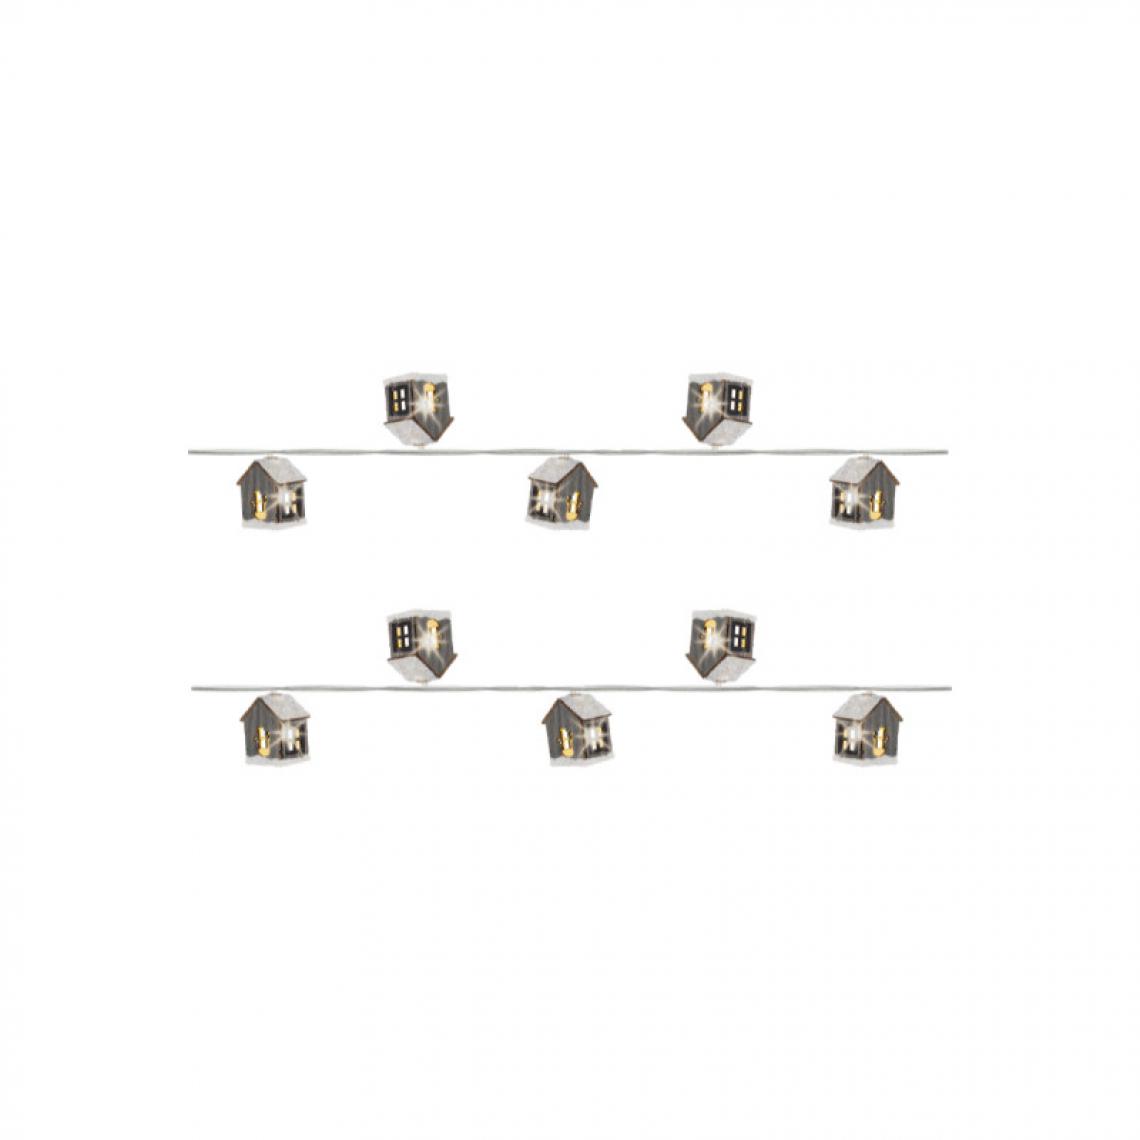 Edm - Guirlande lumineuse chalets EDM - esprit de Noël - lumière chaude - 20 ampoules LED - 3,8 m - 71726 - Décorations de Noël